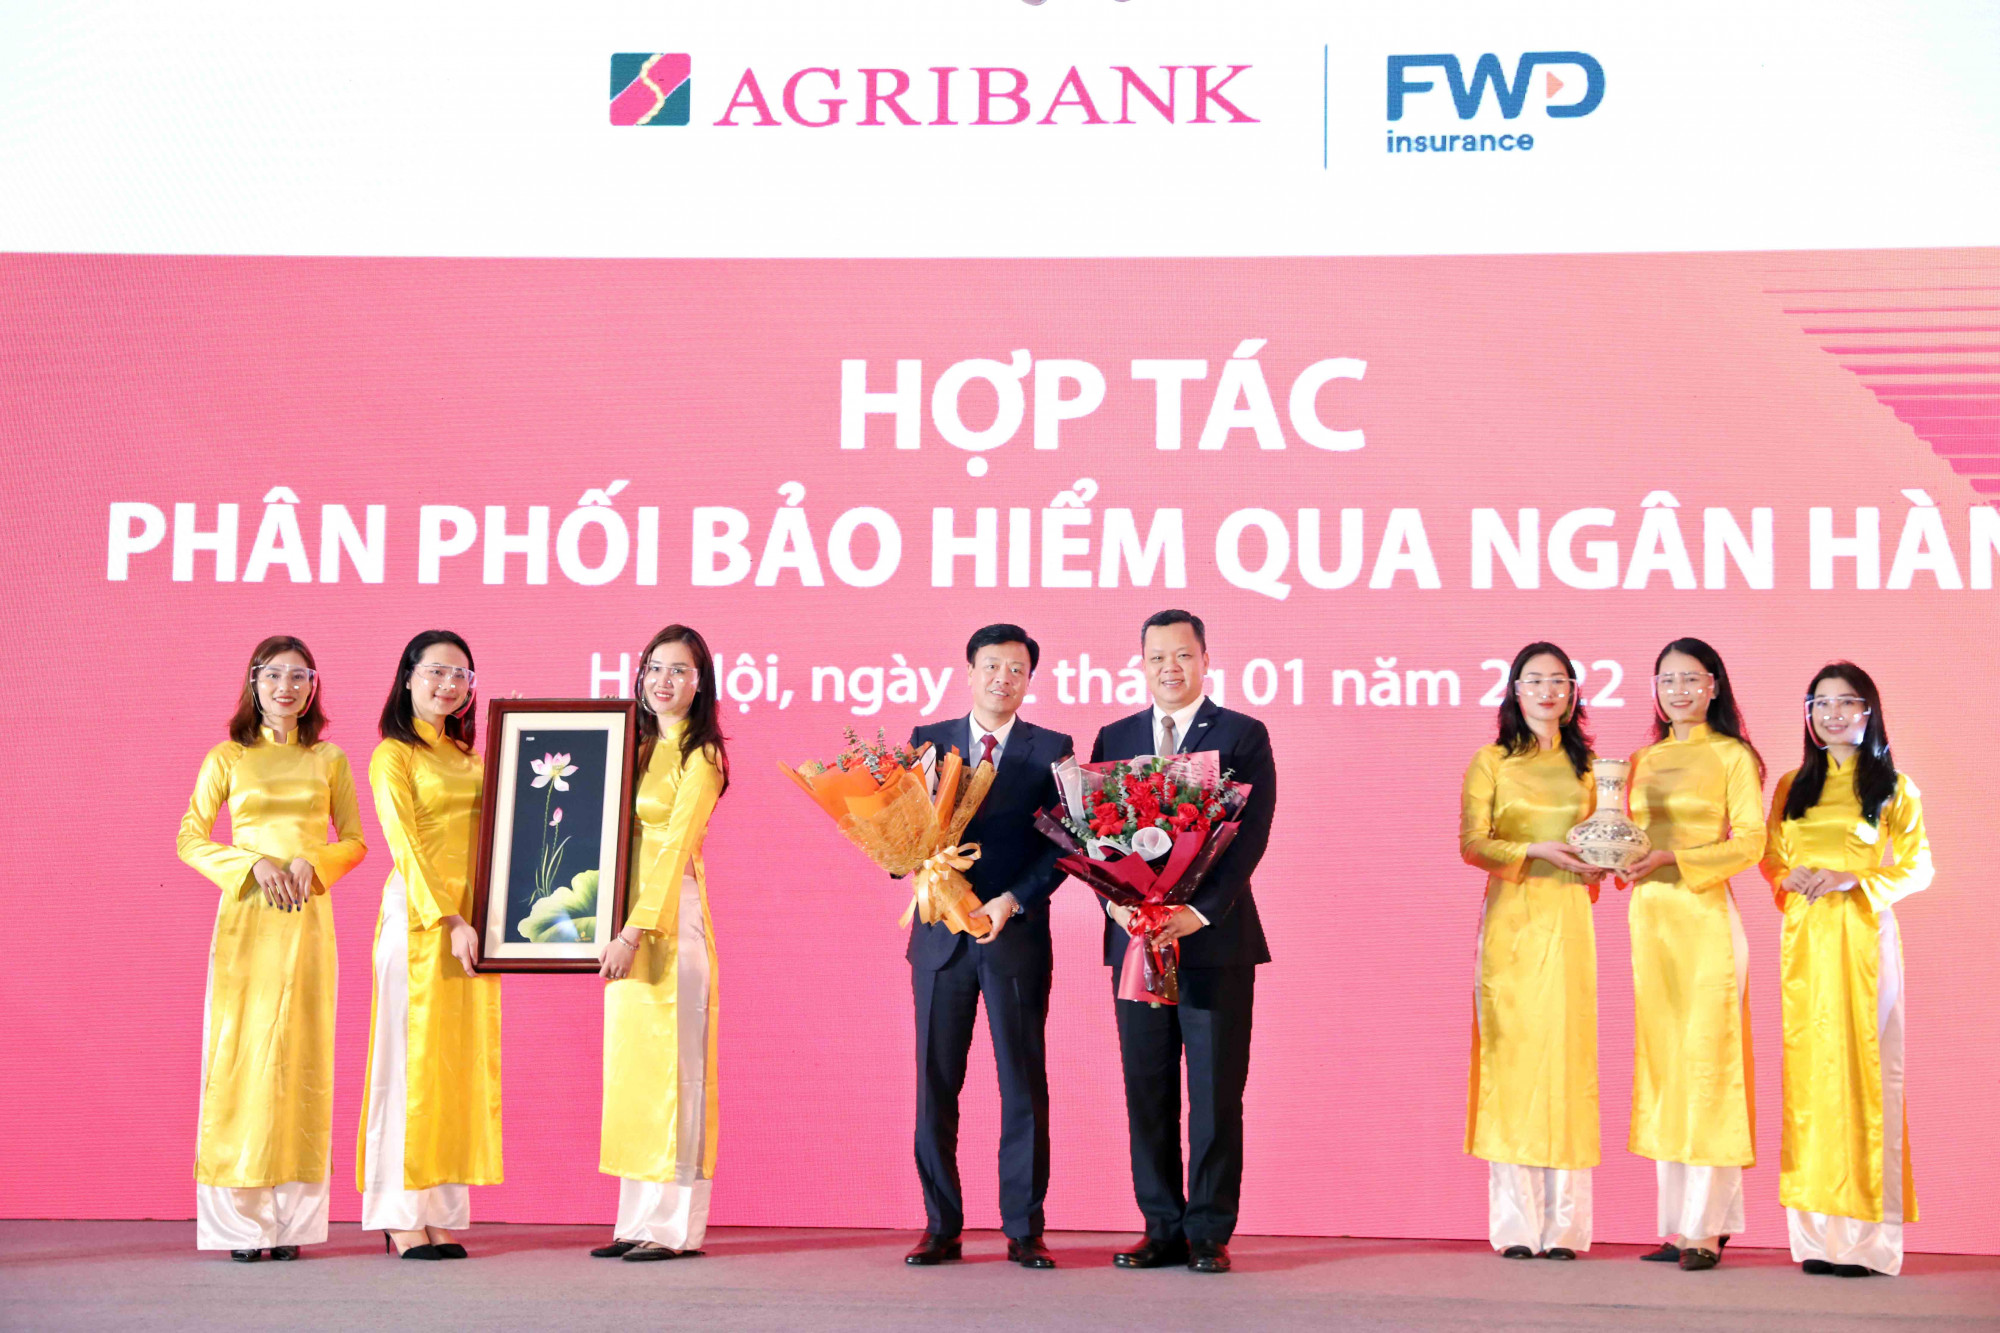 FWD Việt Nam chính thức triển khai hợp tác phân phối bảo hiểm qua Ngân hàng Agribank - Ảnh: Agribank